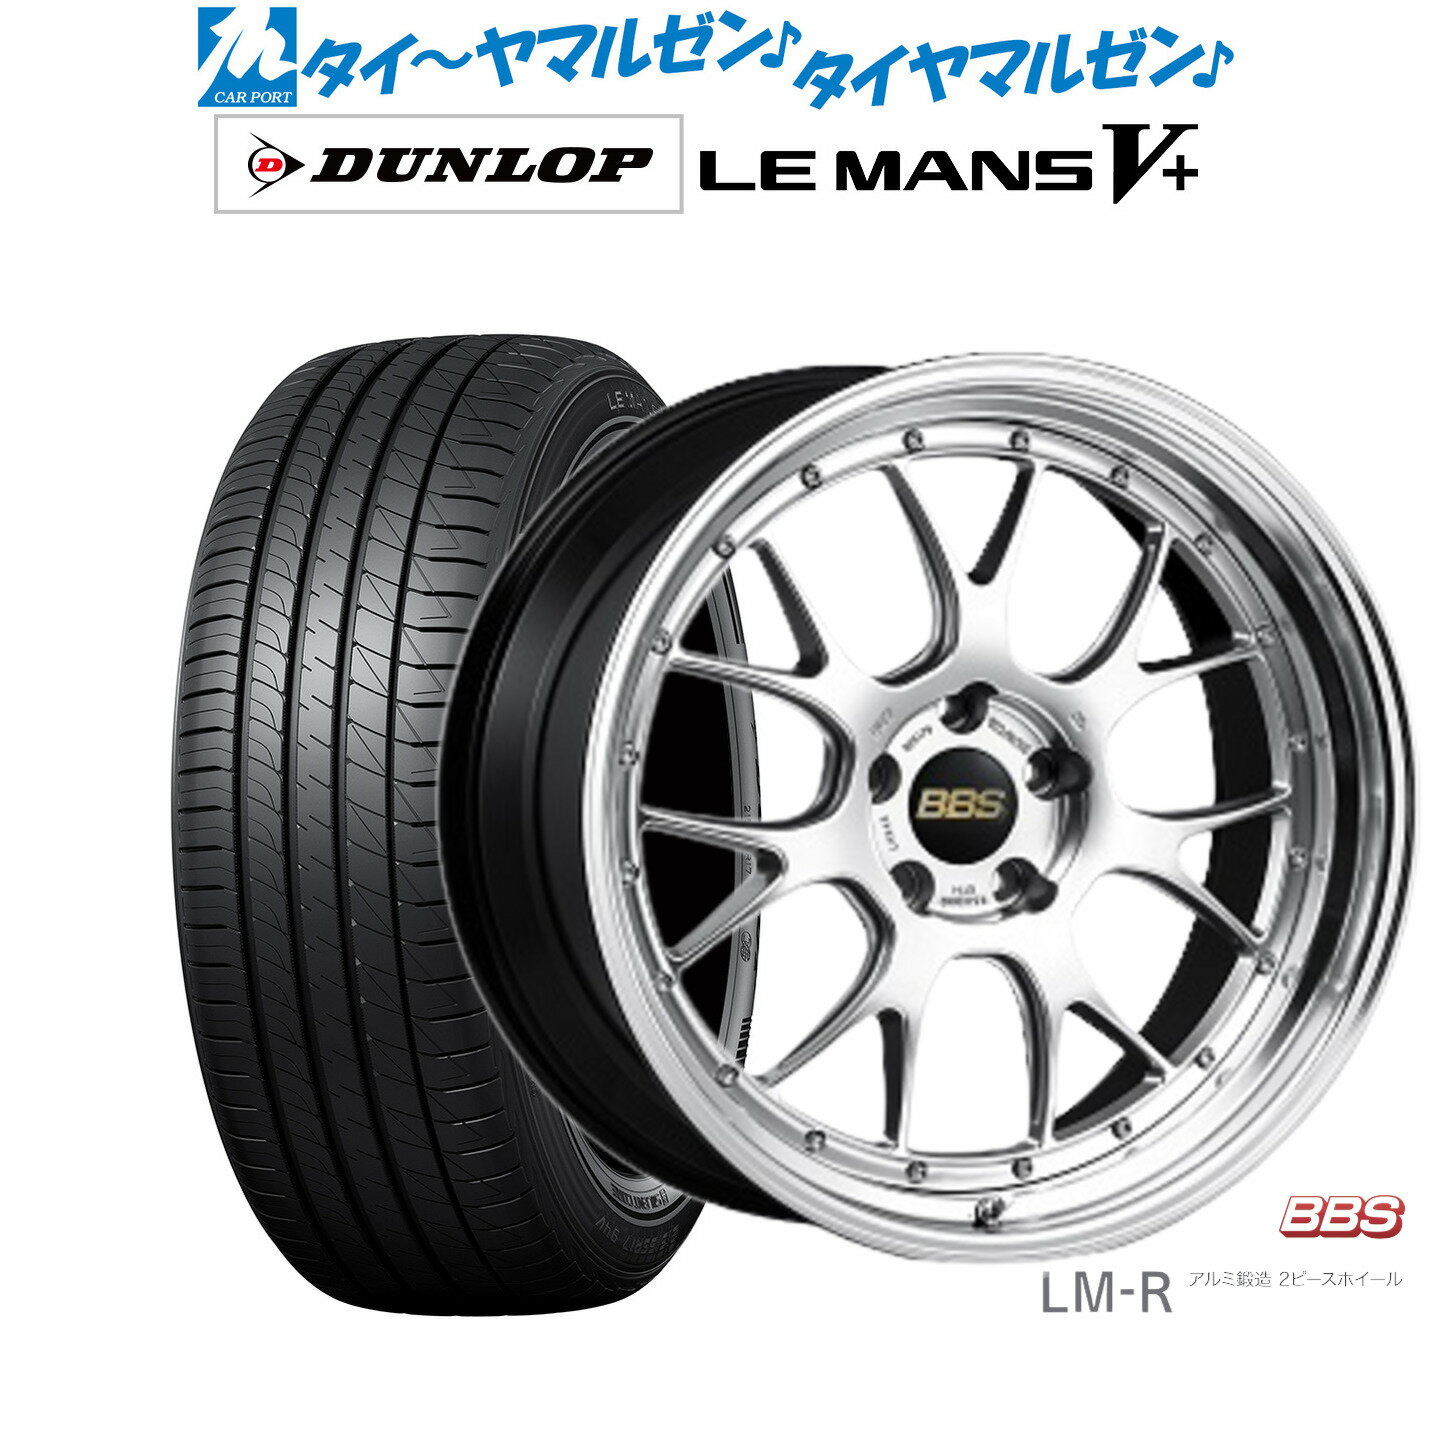 [5/20]割引クーポン配布新品 サマータイヤ ホイール4本セットBBS JAPAN LM-R20インチ 8.5Jダンロップ LEMANS ルマン V+ (ファイブプラス)245/40R20